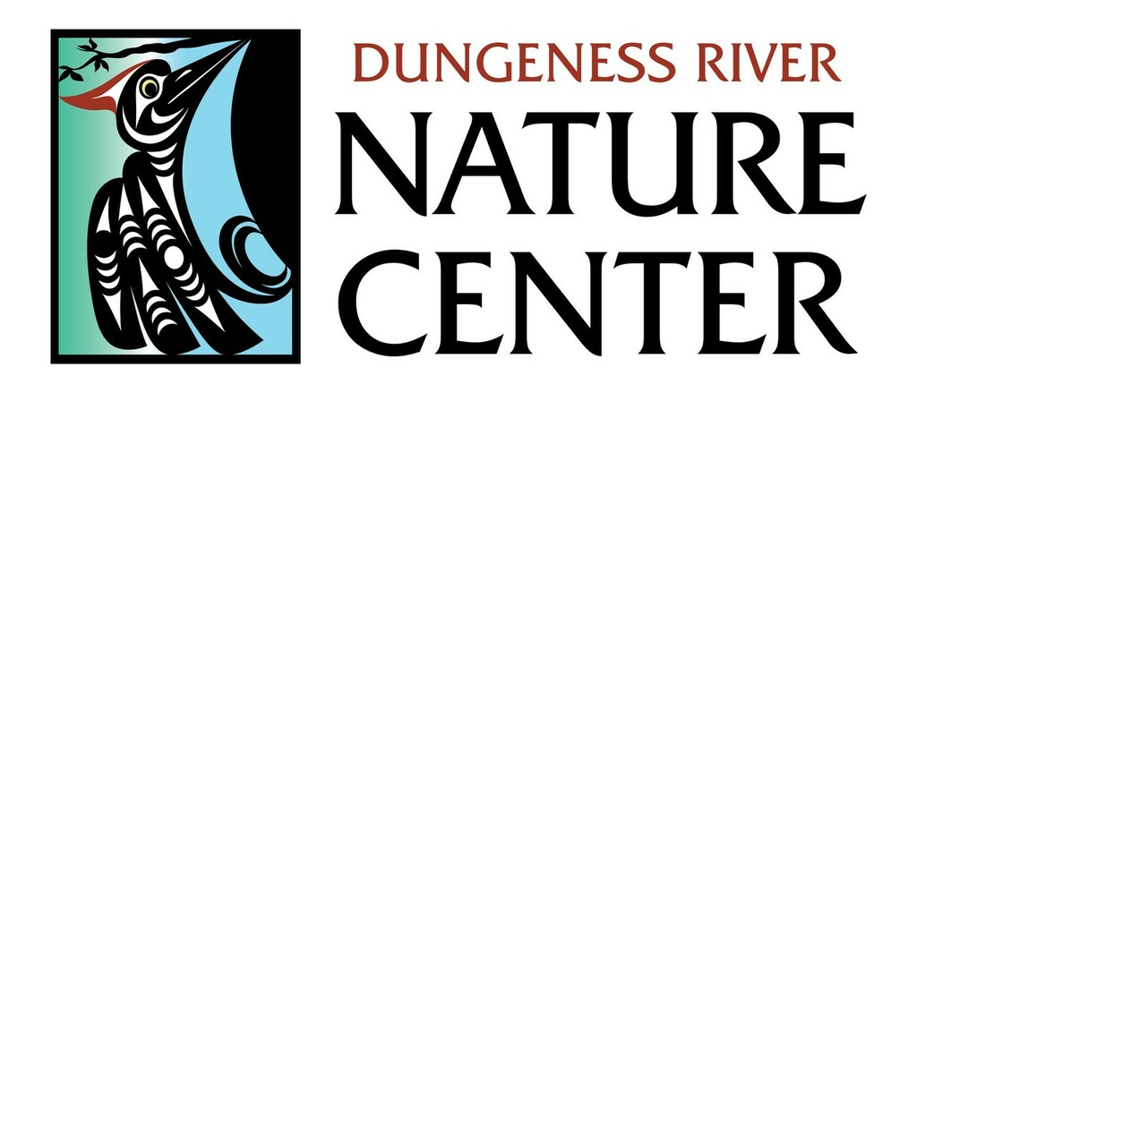 Rain Garden - Dungeness River Nature Center